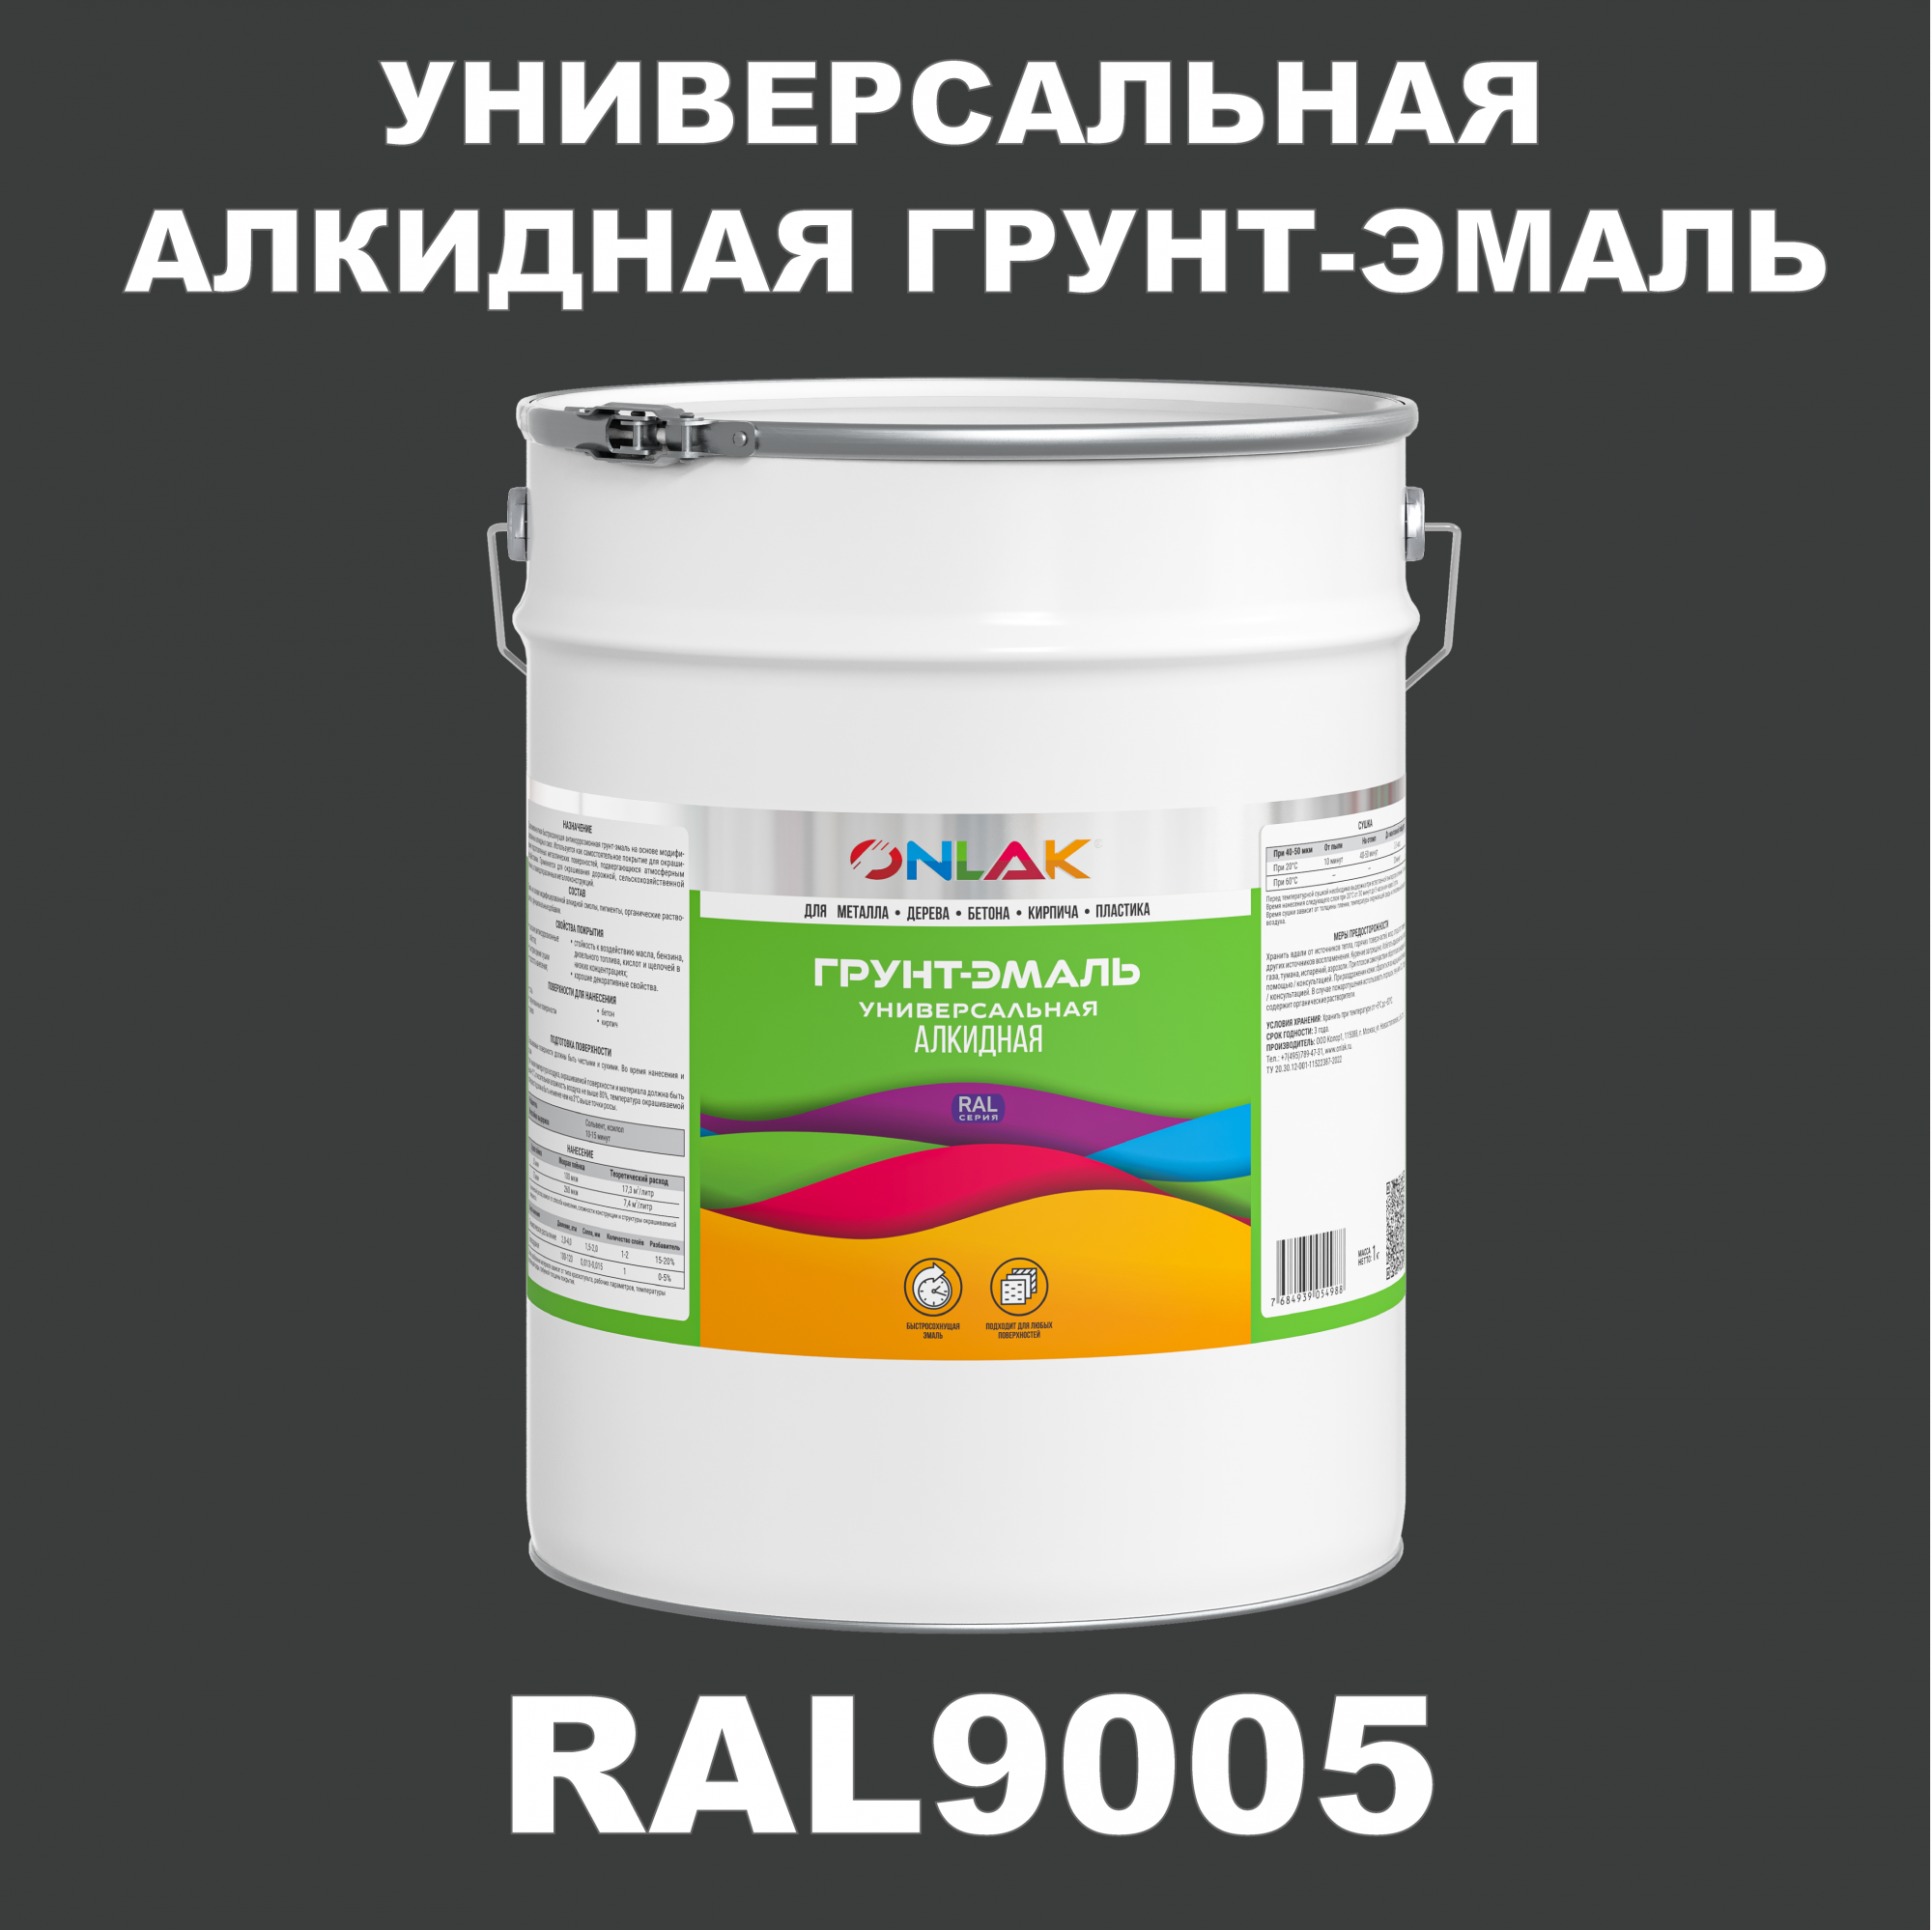 Грунт-эмаль ONLAK 1К RAL9005 антикоррозионная алкидная по металлу по ржавчине 20 кг грунт эмаль yollo по ржавчине алкидная зеленая 0 9 кг